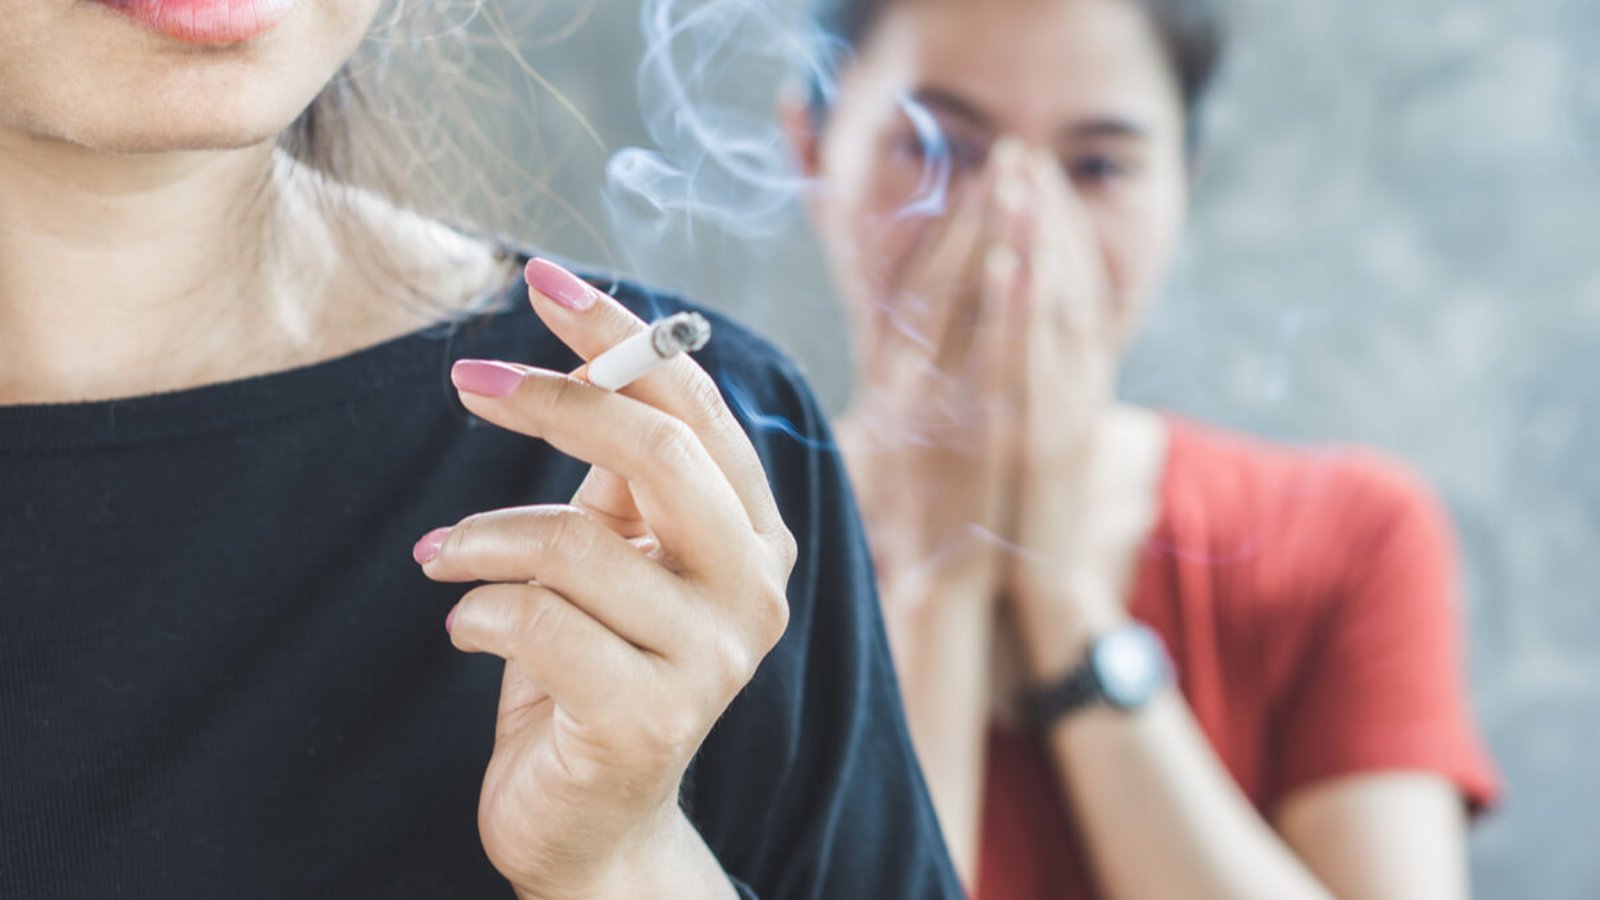 Wir verraten Ihnen 7 Tipps, wie Sie unangenehmen Rauchgeruch aus der Wohnung, dem Auto oder aus der Kleidung entfernen.Foto: Doucefleur / Shutterstock.com